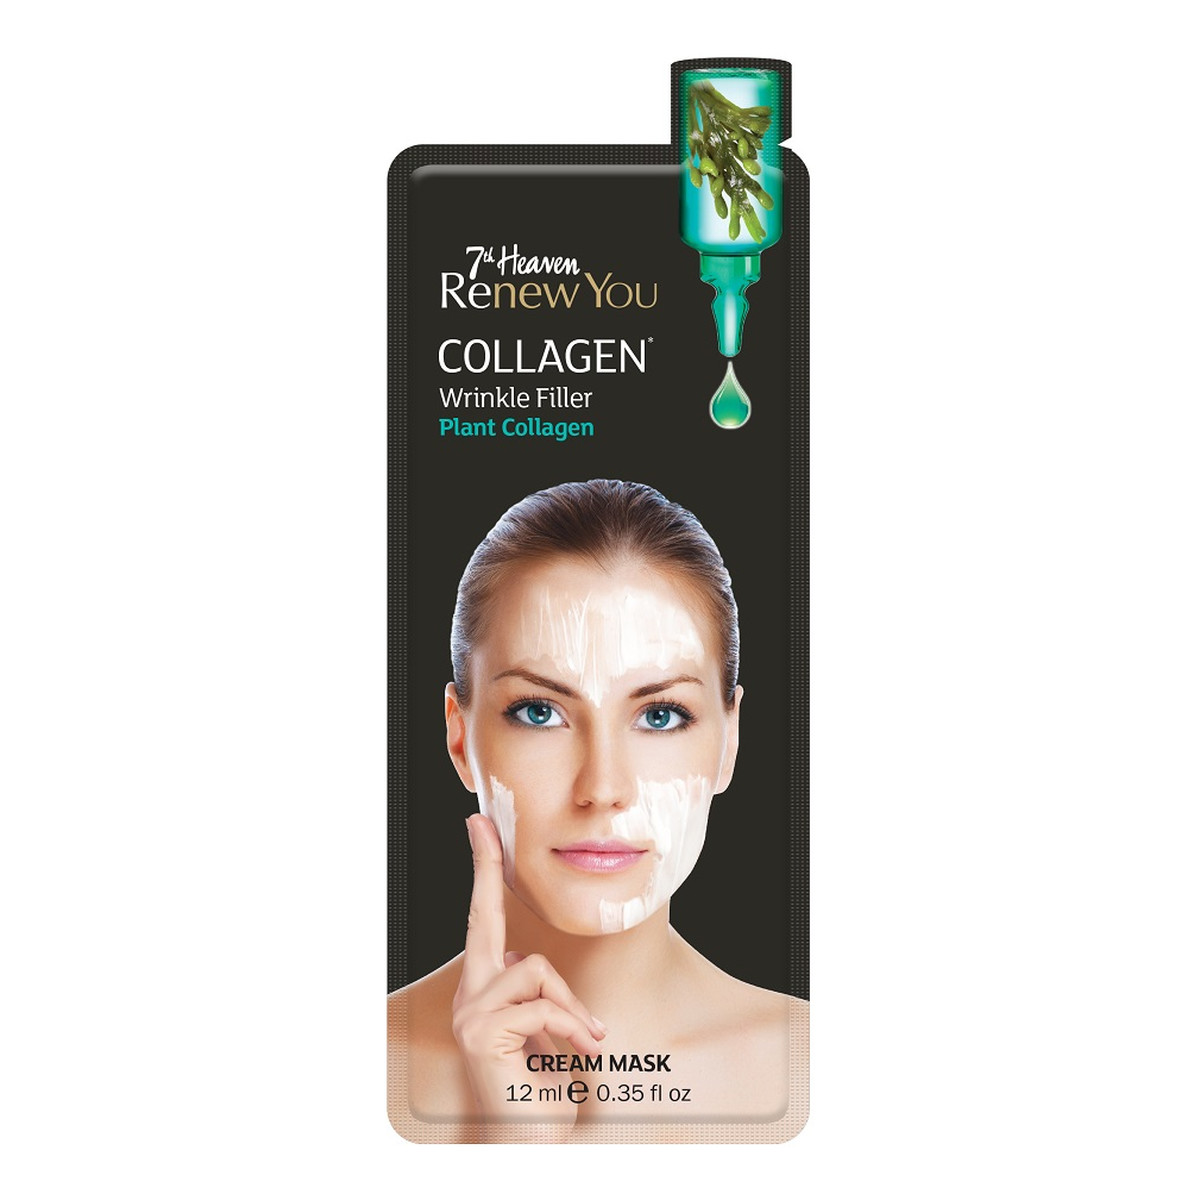 7th Heaven Renew You Collagen maseczka do twarzy przeciw starzeniu się skóry Plant Collagen 12ml